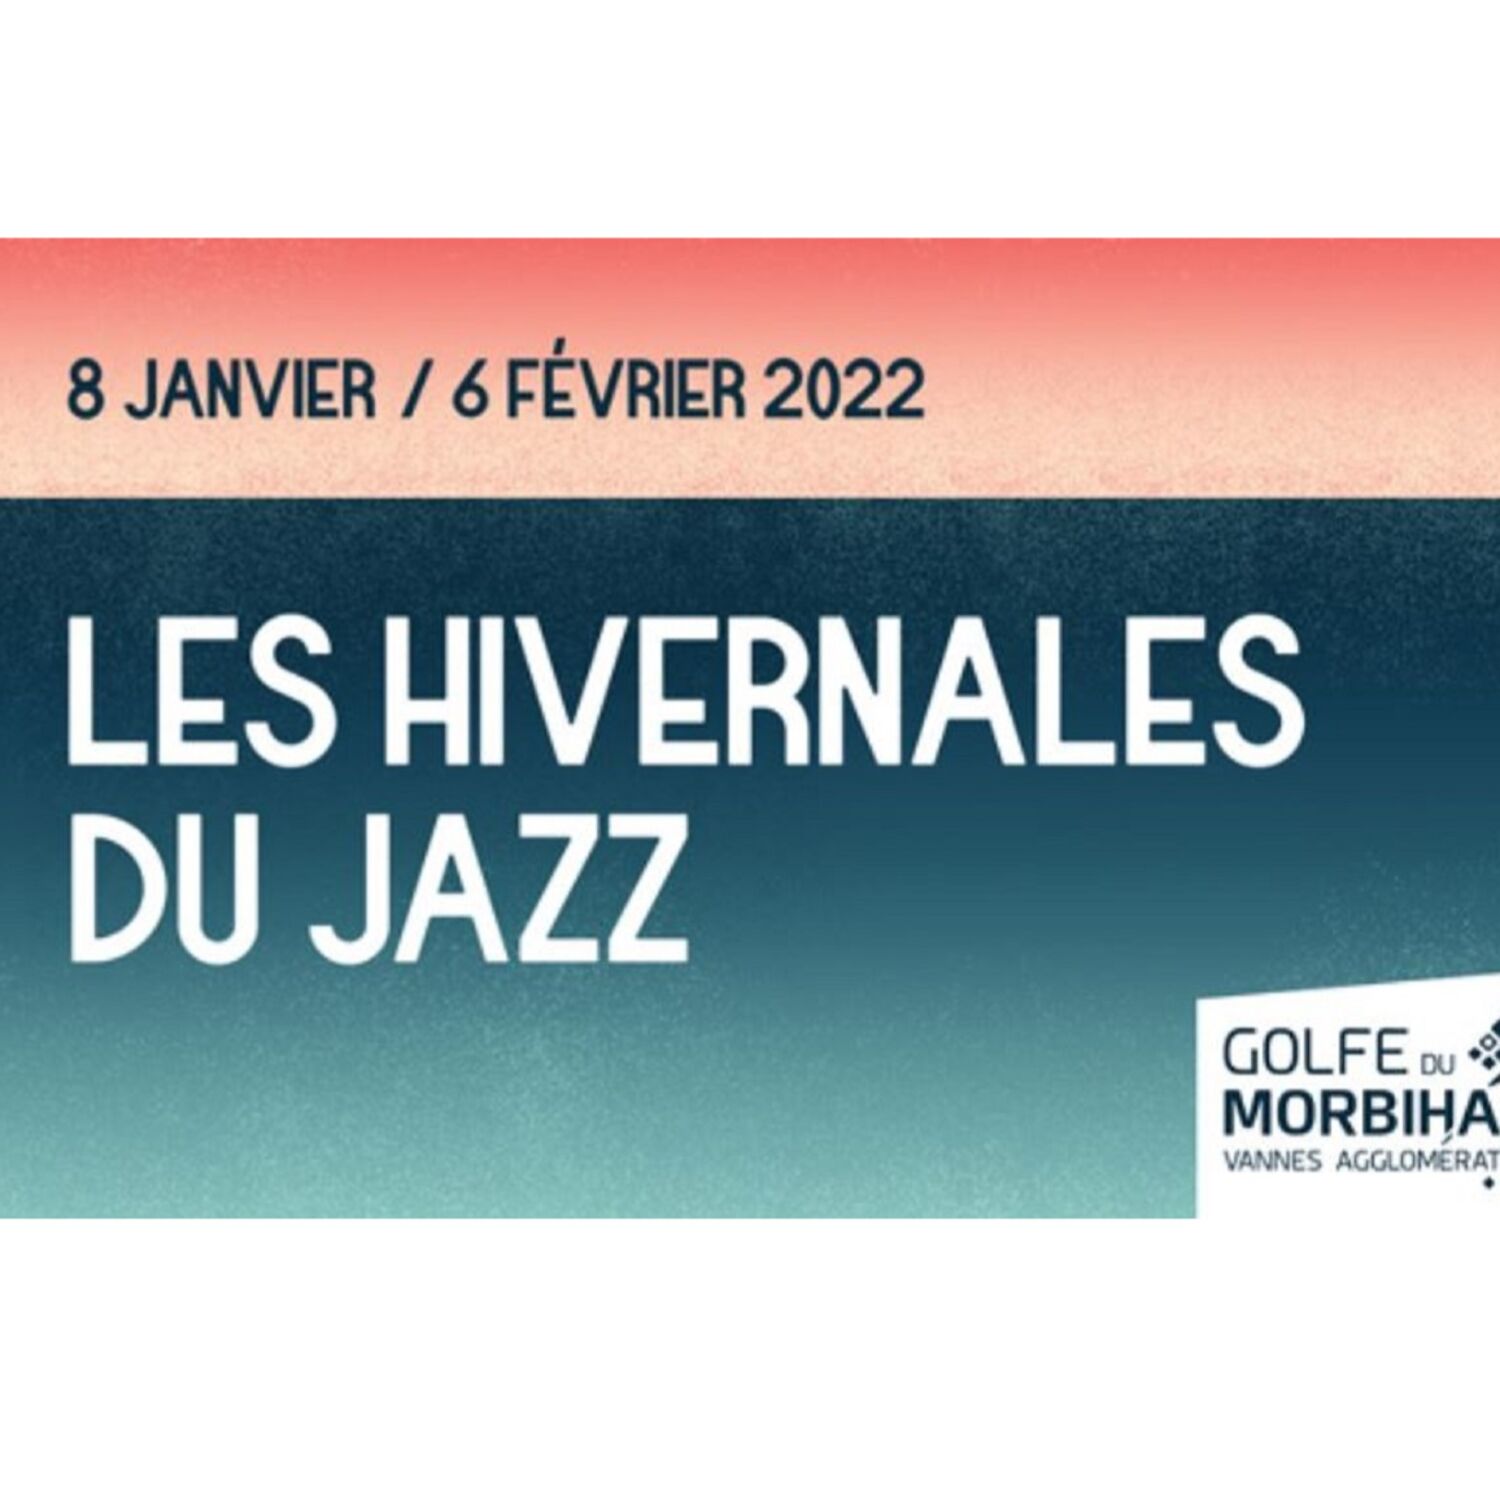 Les Hivernales du Jazz 2022, c'est parti !